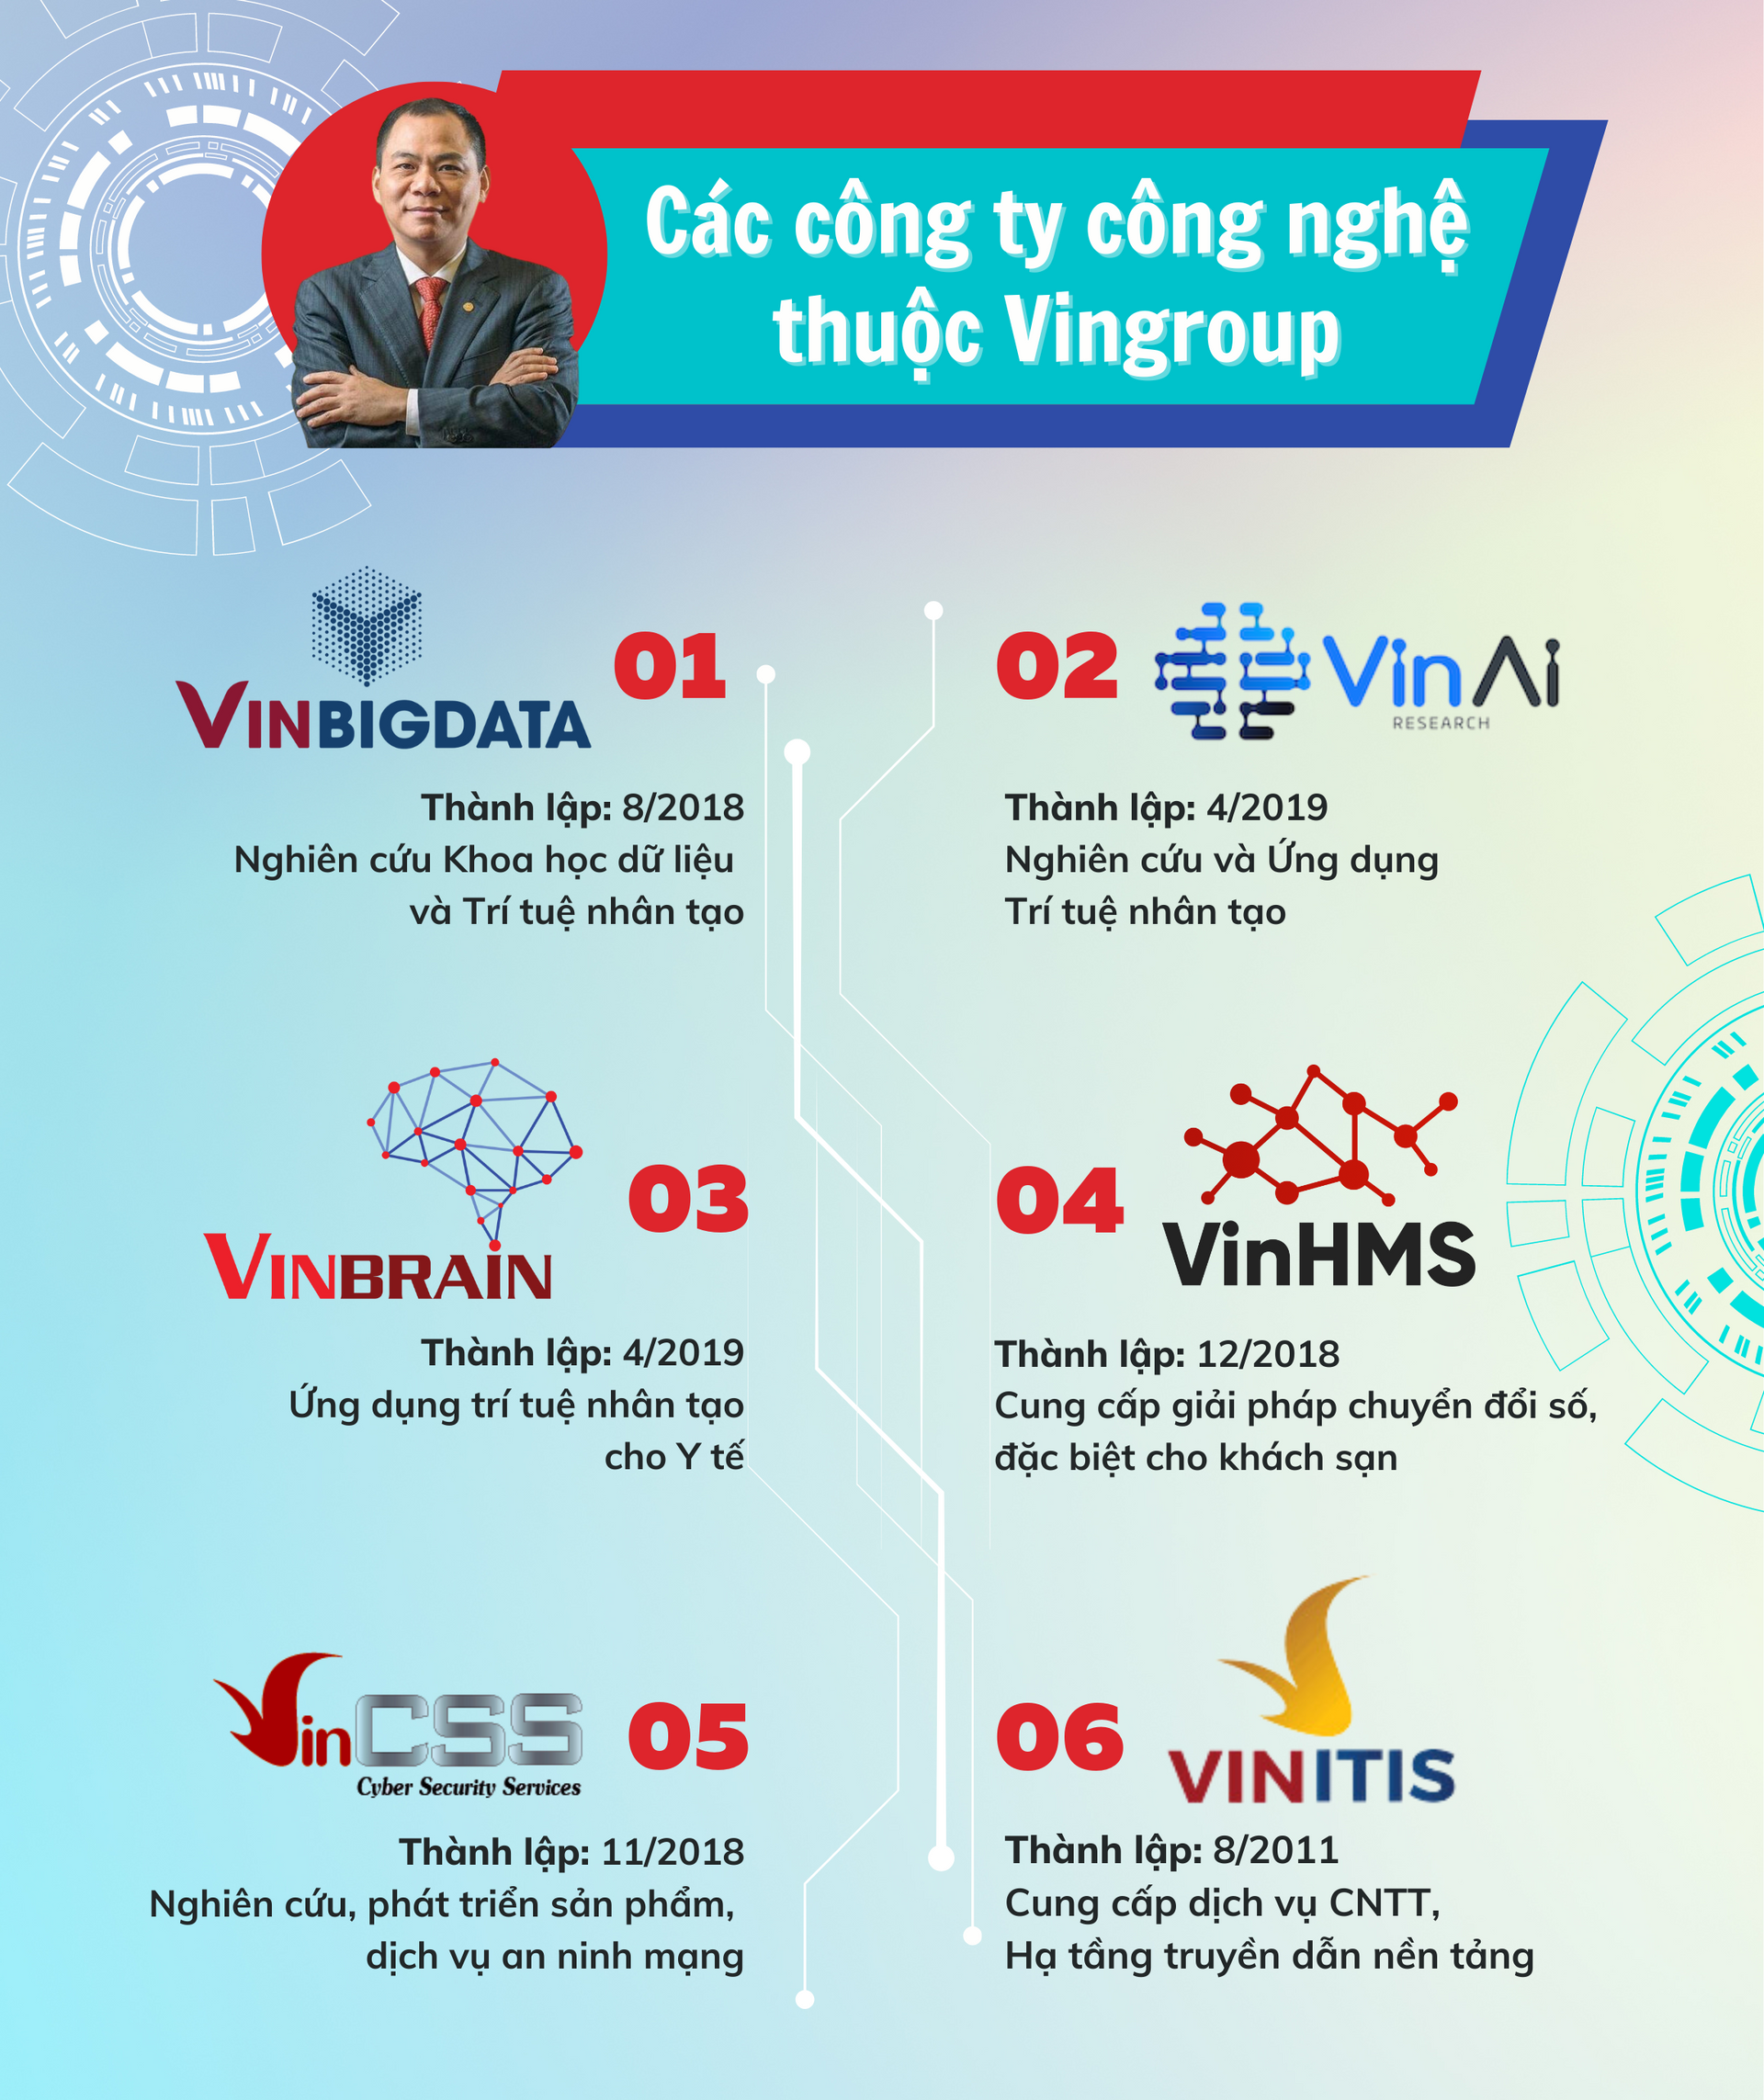 vingroup-tech-company-1-.png